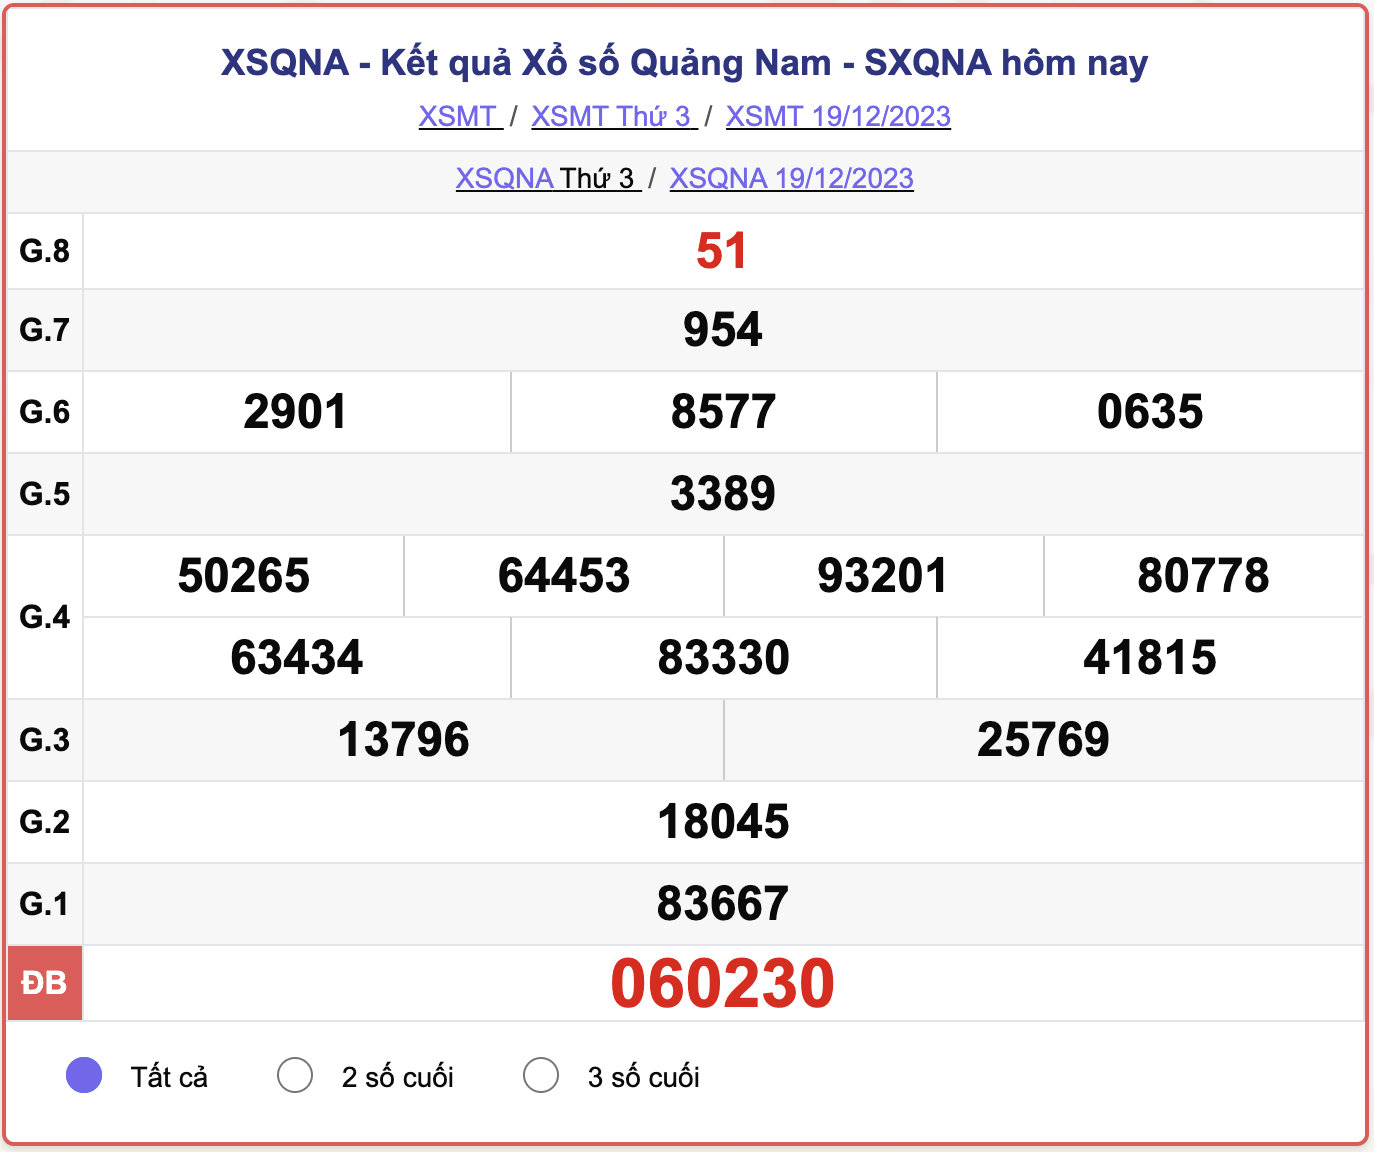 XSQNA thứ 3, kết quả xổ số Quảng Nam ngày 19/12/2023